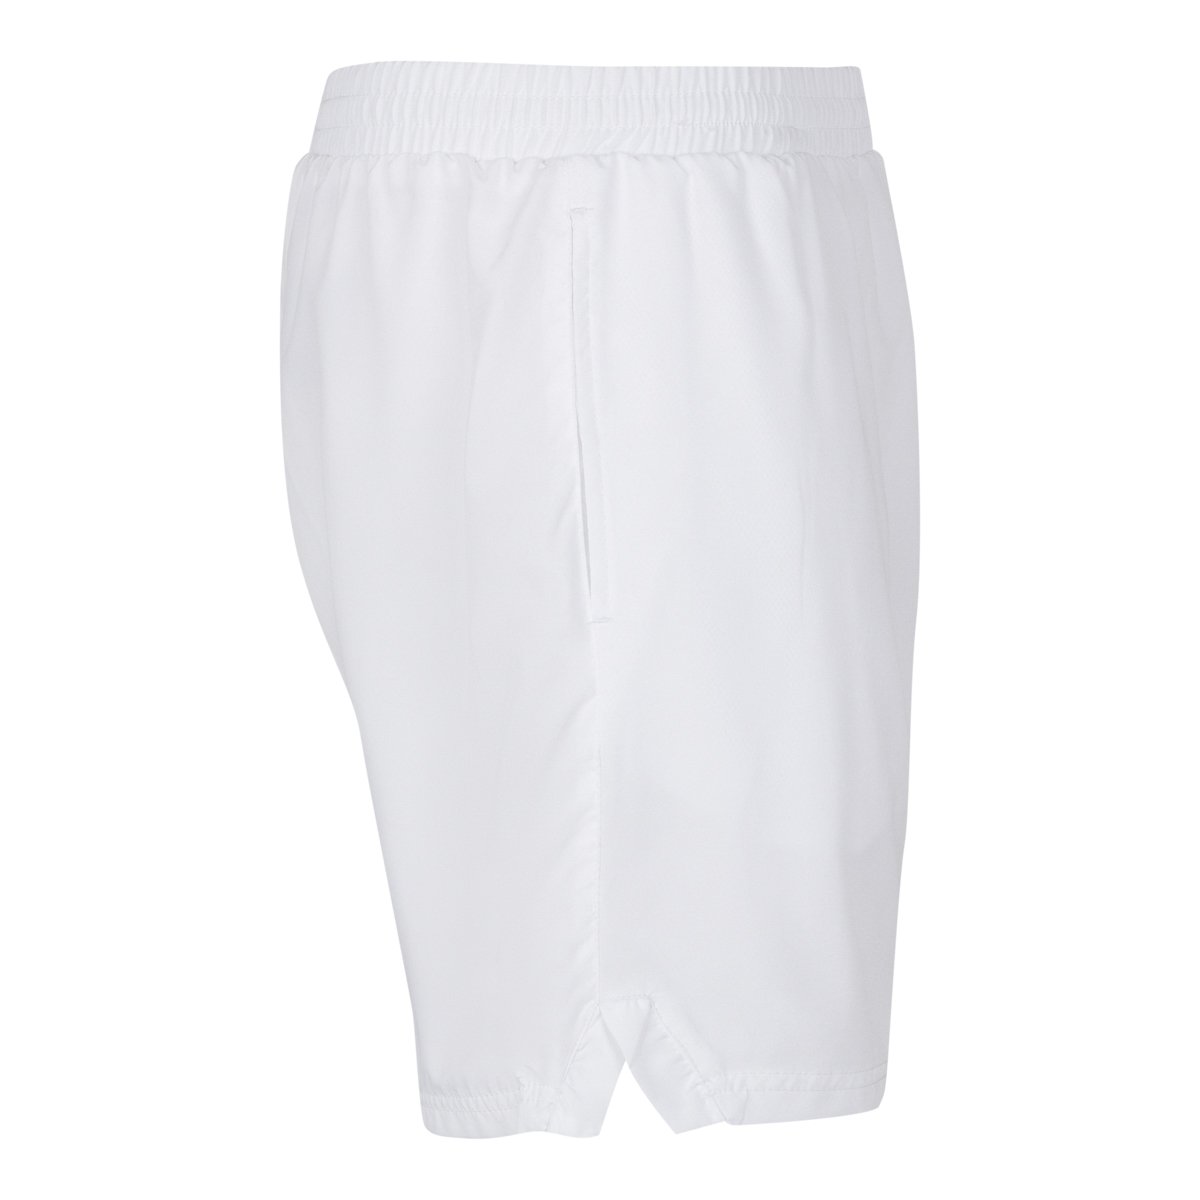 Pantalones cortes Tenis Lambre Blanco Hombre - Imagen 3